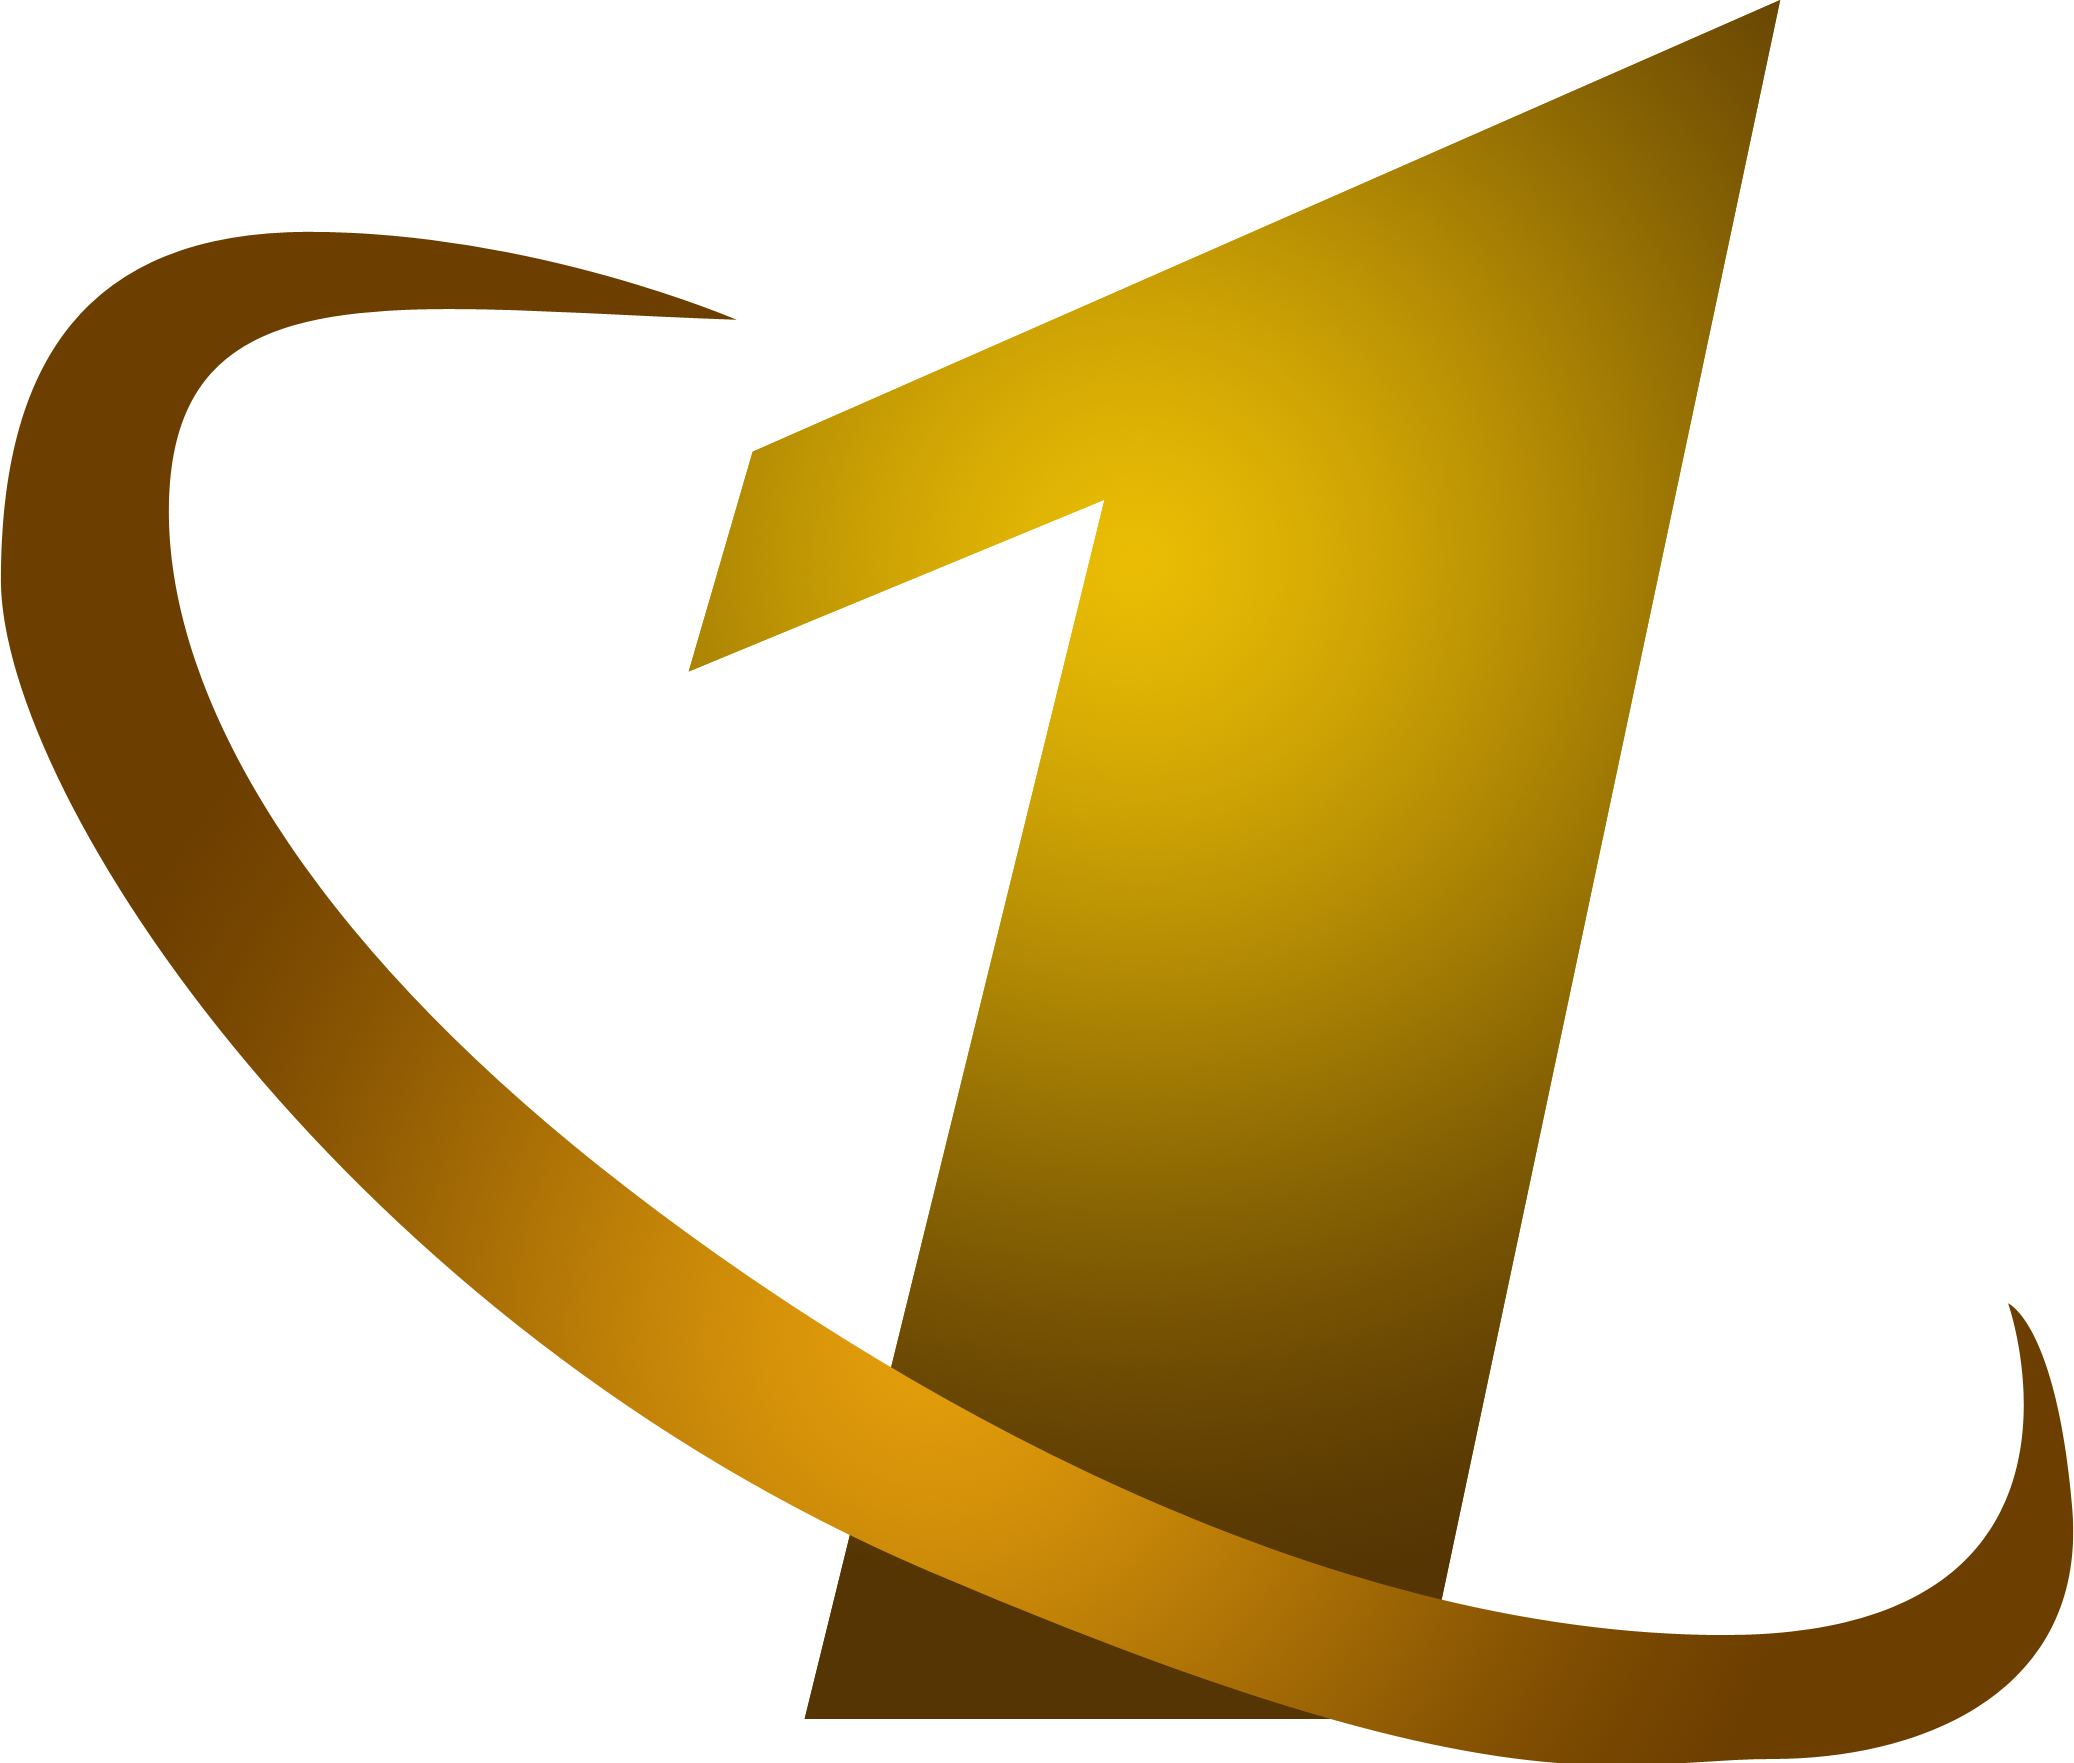 Первый канал 15.03 24. ОРТ логотип 1997-2000. Первый канал логотип 1995. ОРТ 1997 логотип. Эмблема канала ОРТ.